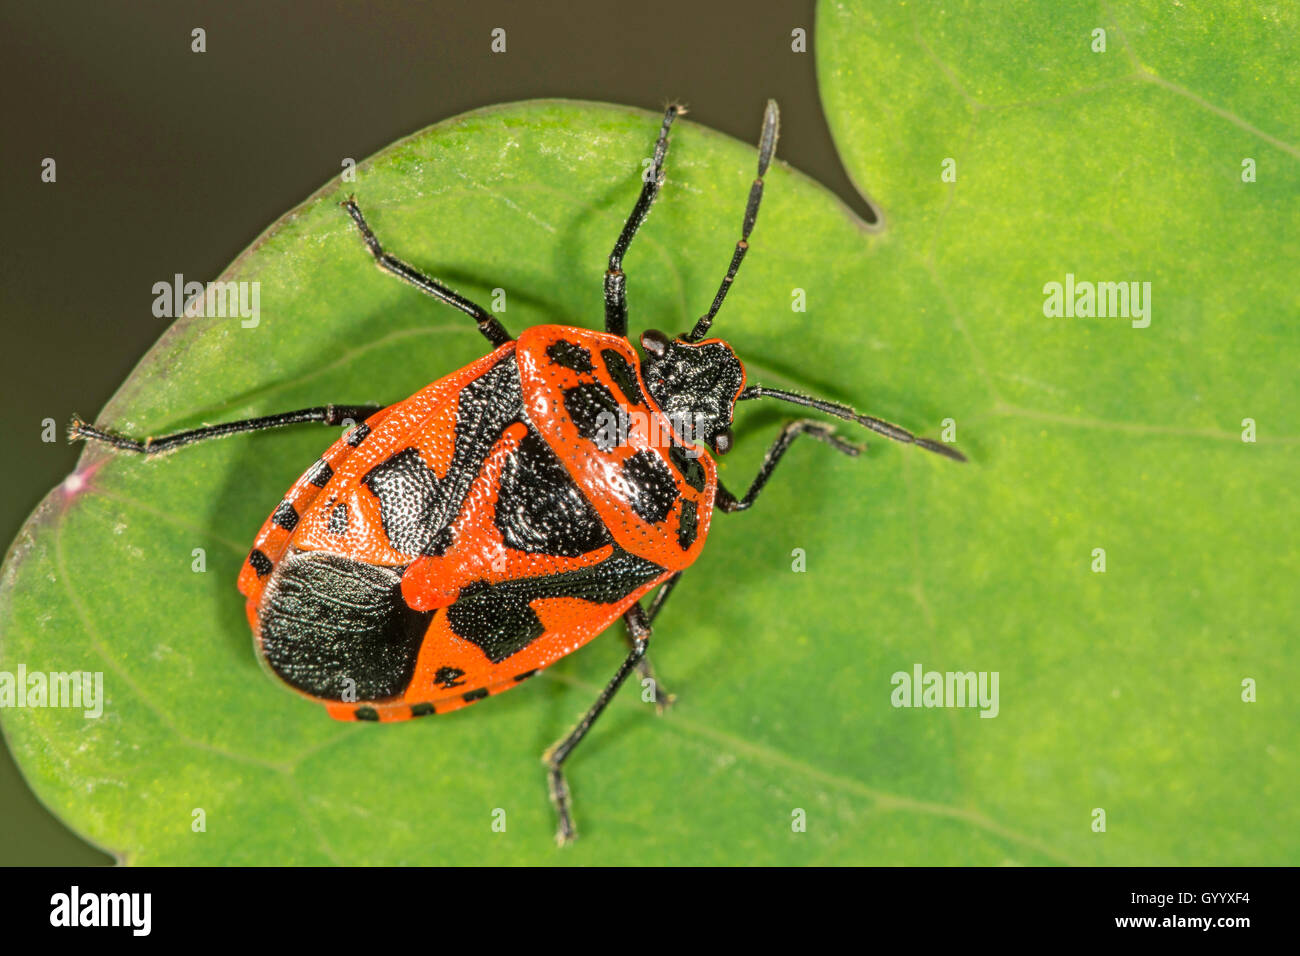 Red and black shield bug (Eurydema dominulus) on leaf, Baden-Württemberg, Germany Stock Photo